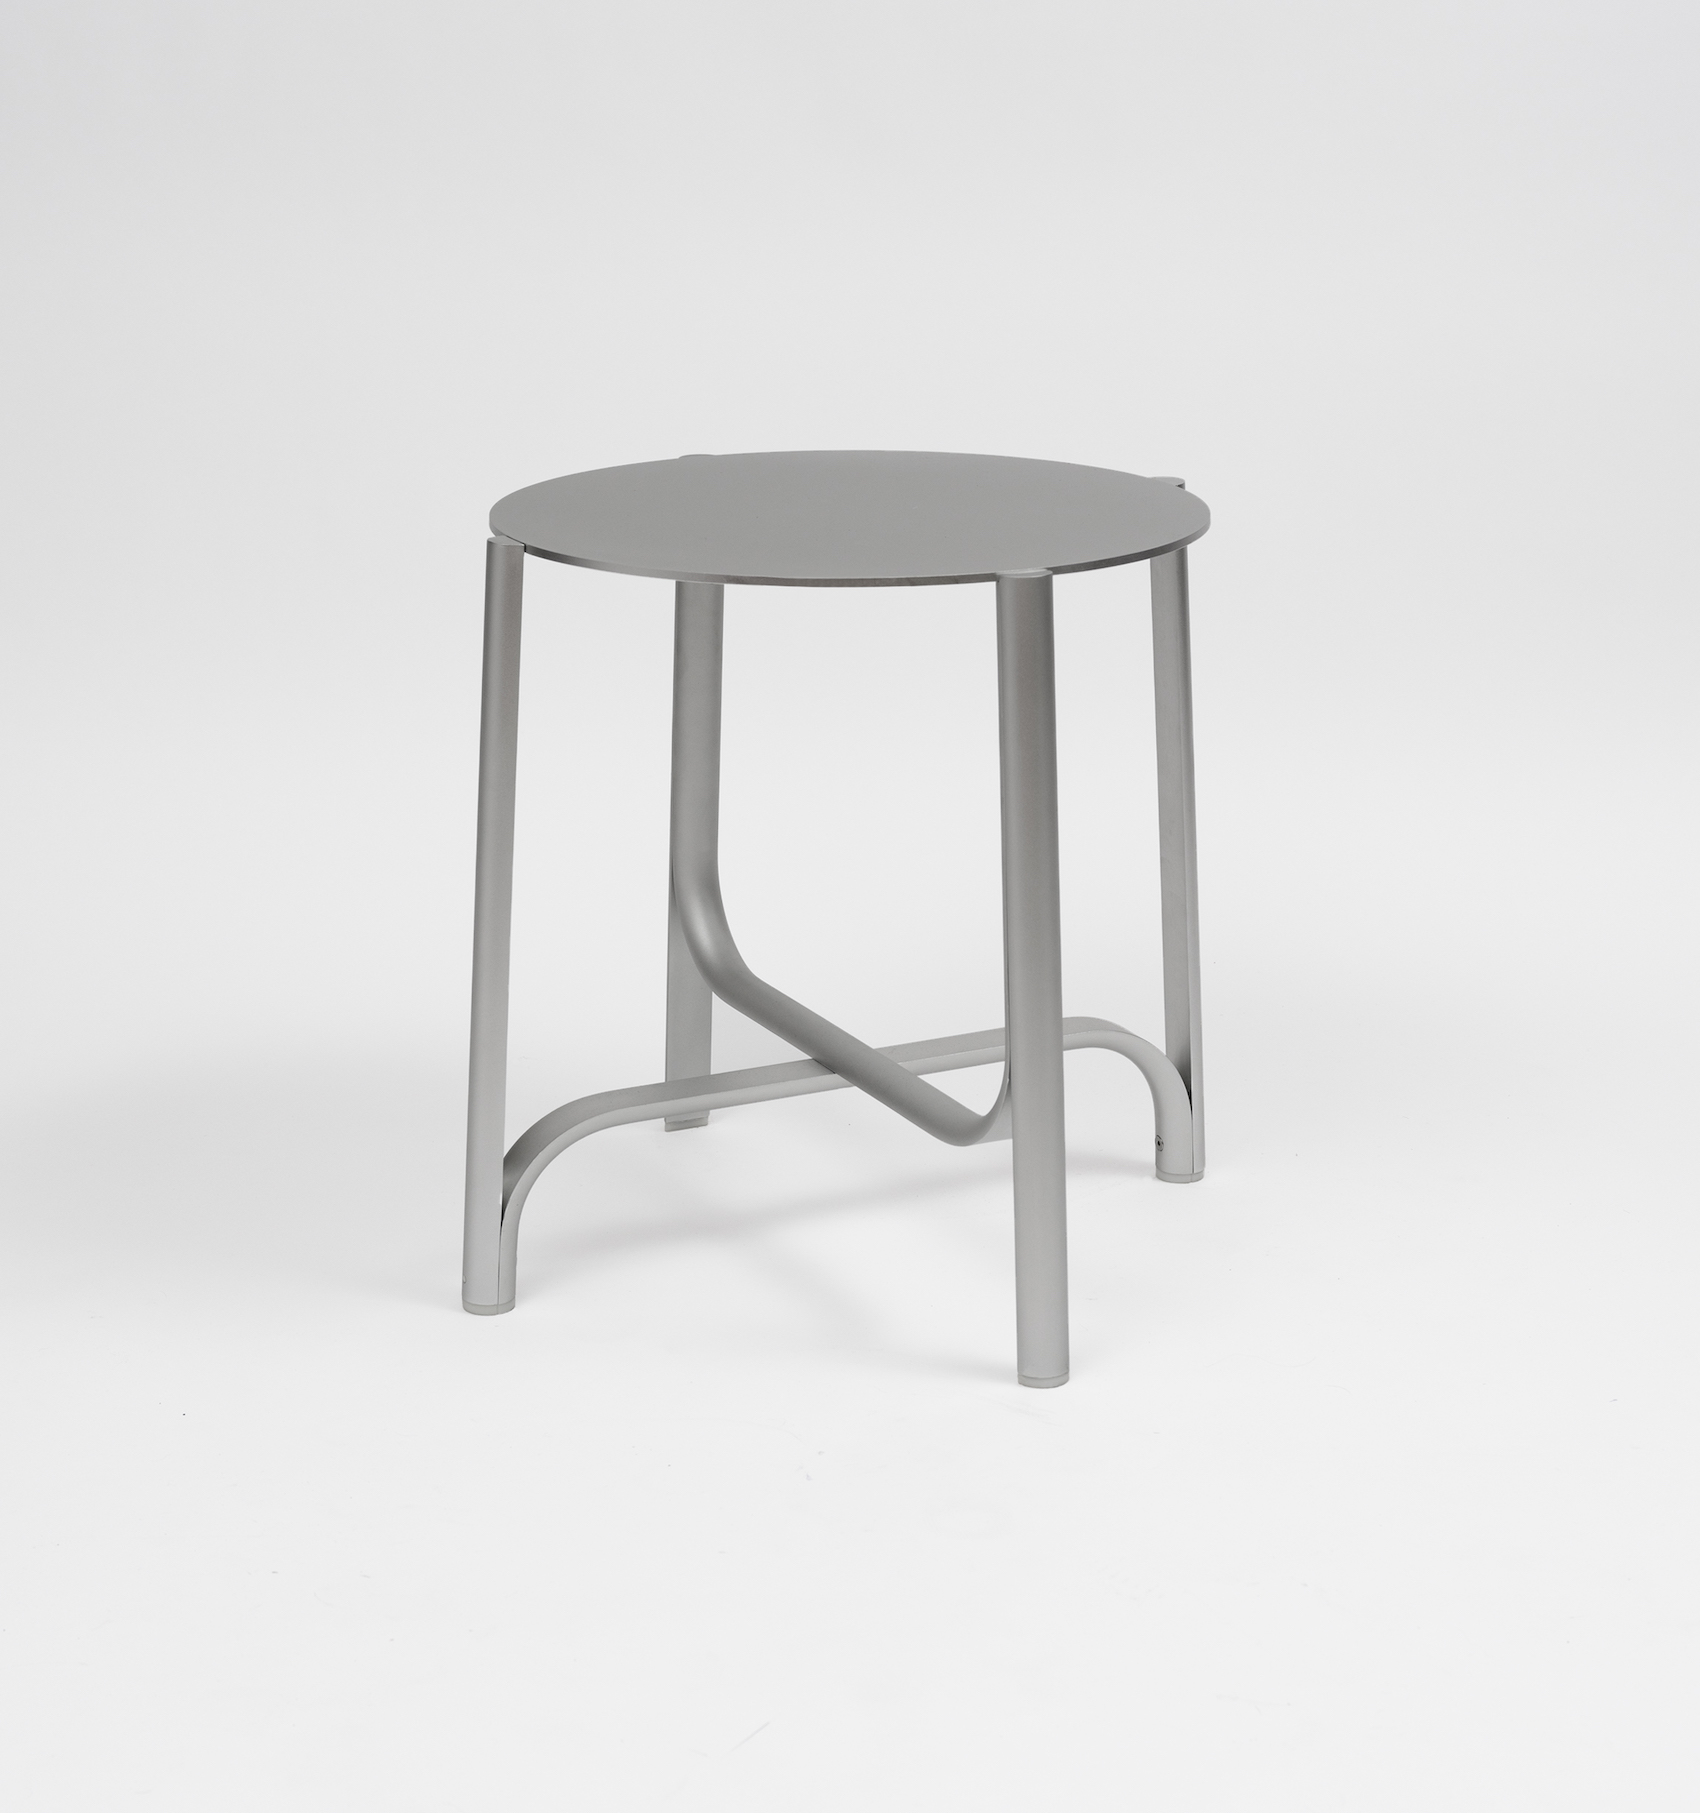 401 Minimalist Table by Jamie Wolfond